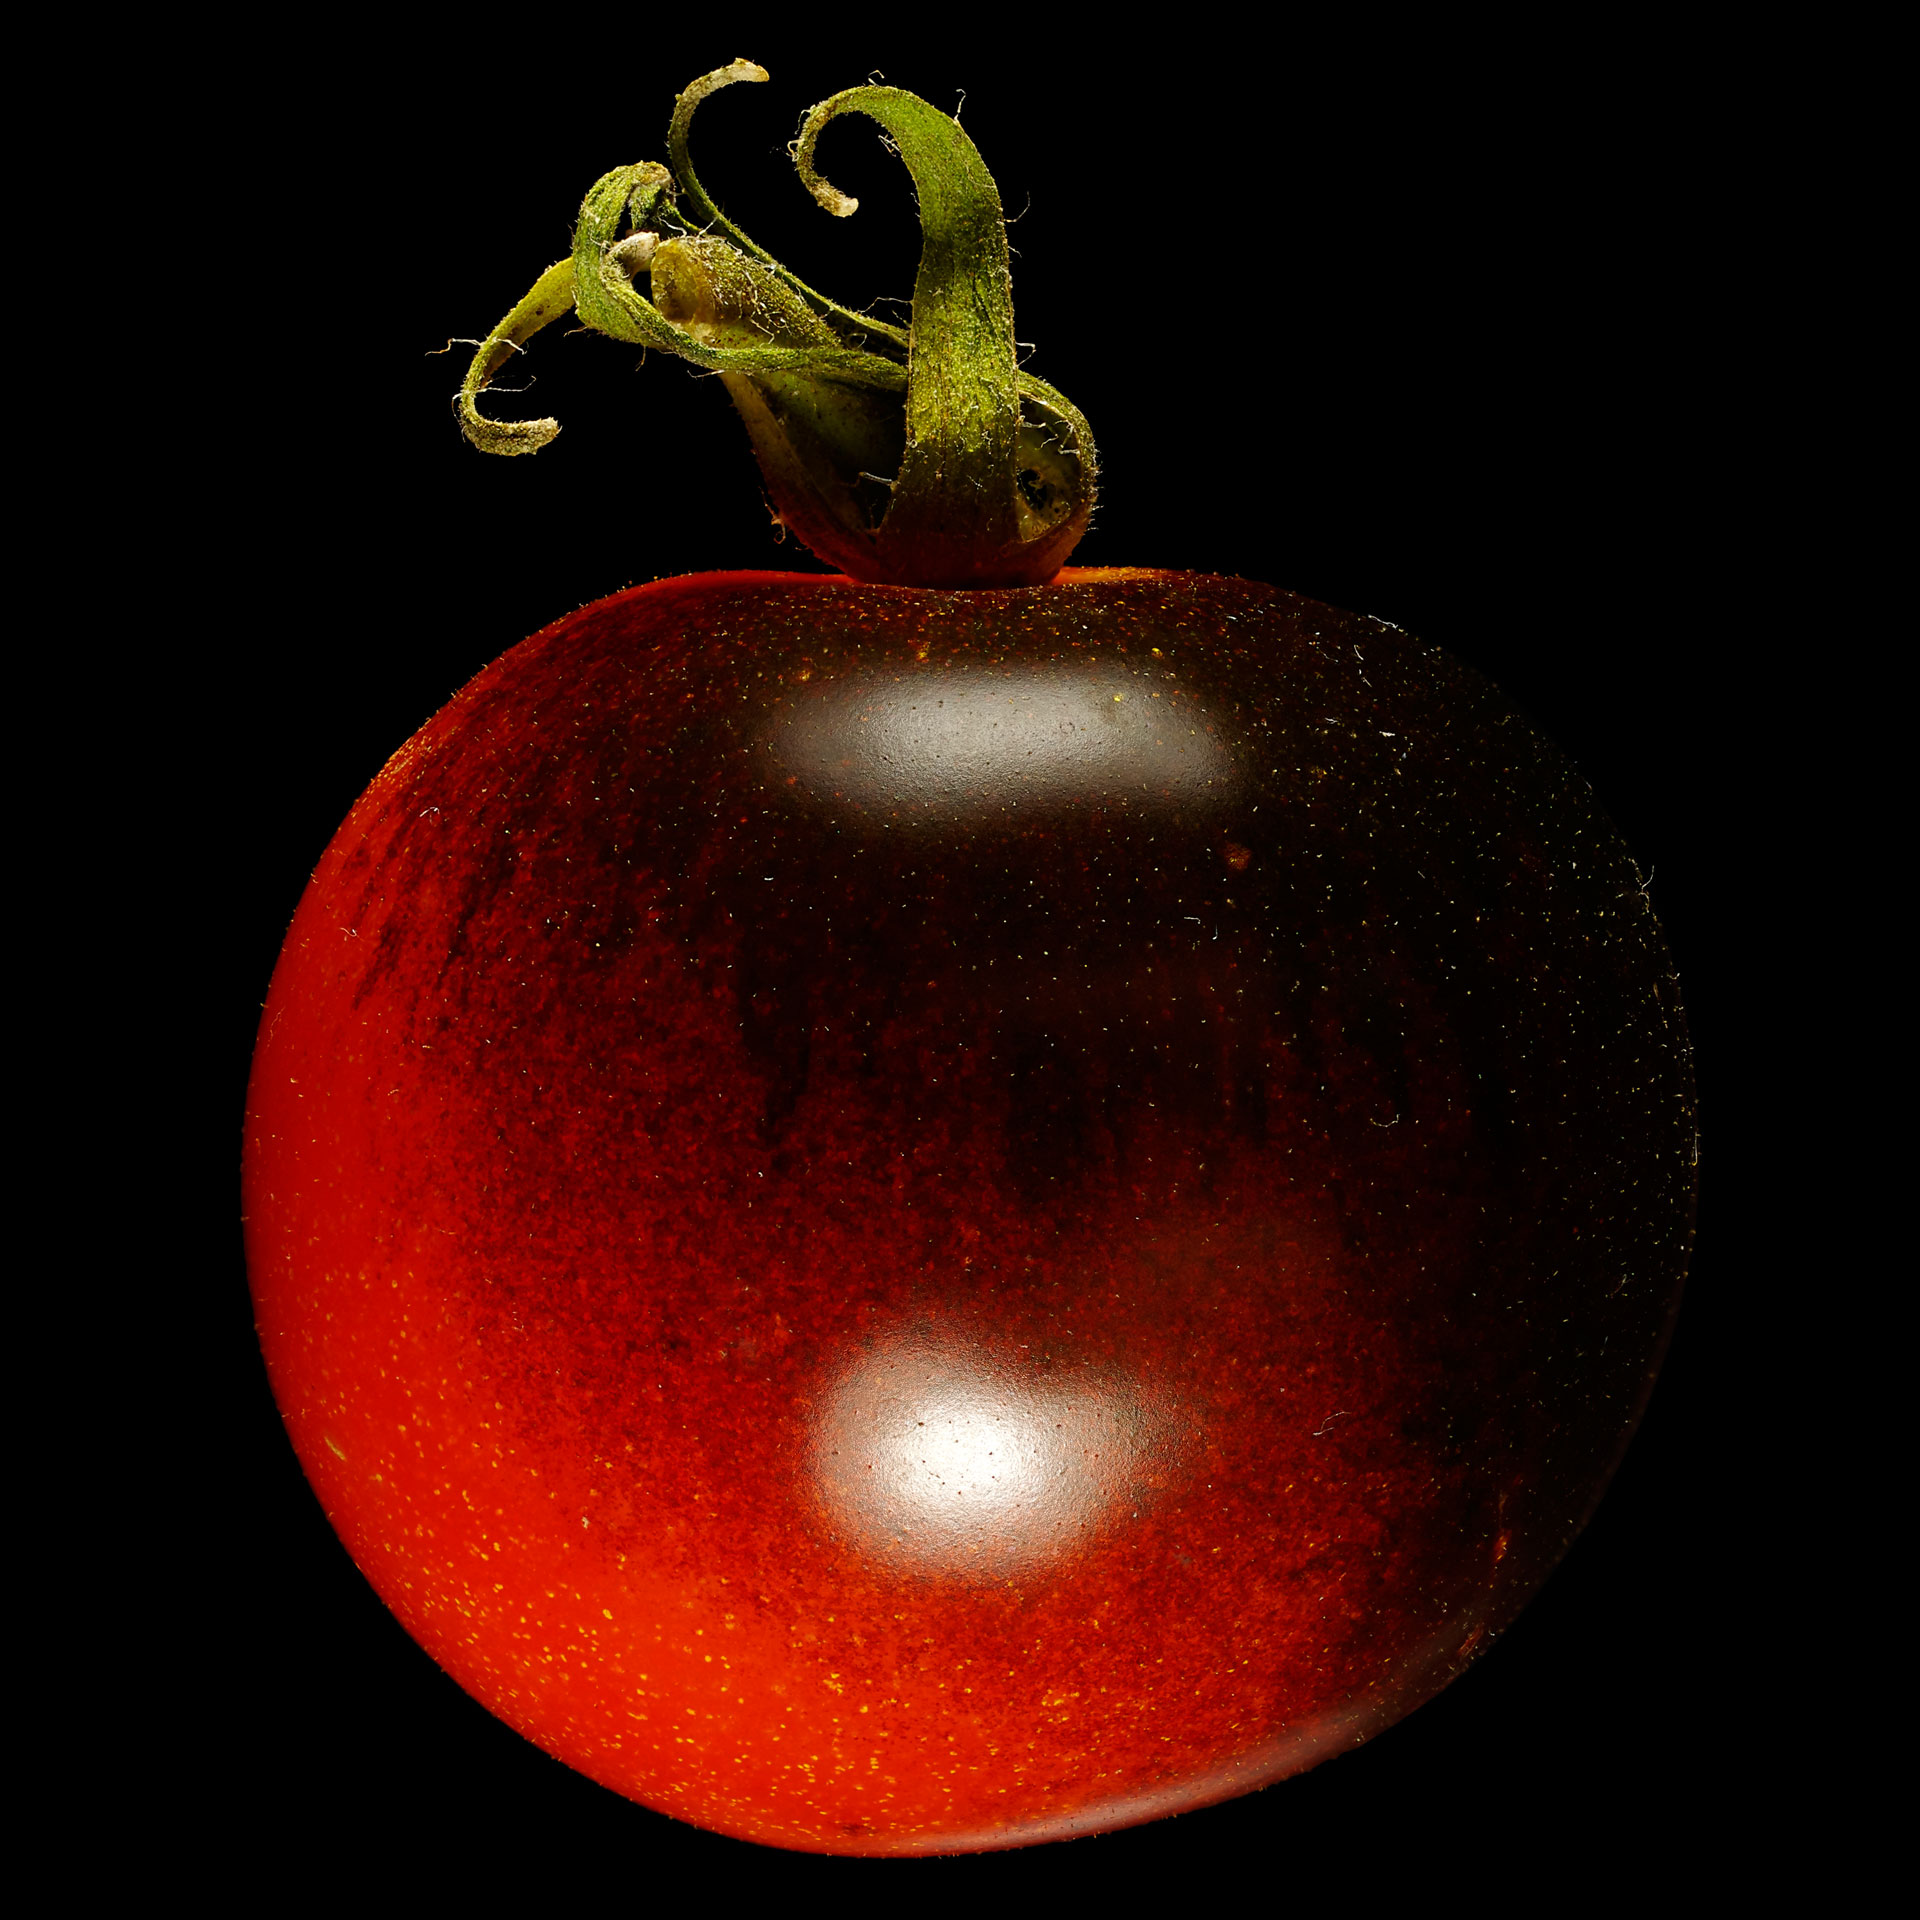 Indigo rose tomato: Solanum lycopersicum ‘Indigo Rose’